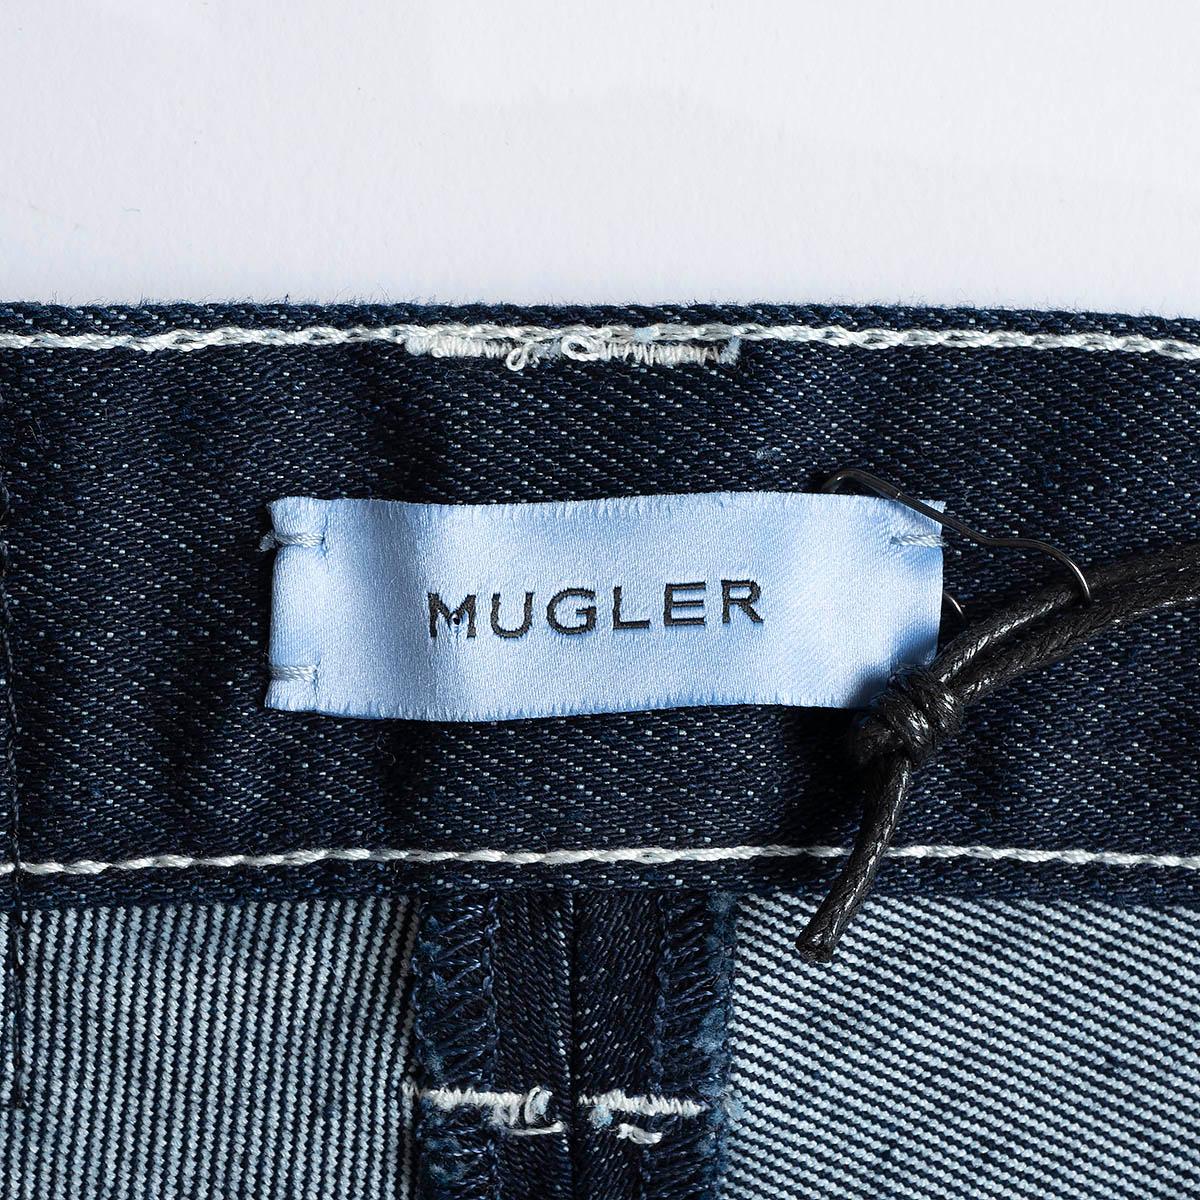 MUGLER Dunkelblaue Baumwoll-Jeans SPIRAL HIGH WAISTED HOT PANTS Shorts 36 XS 4